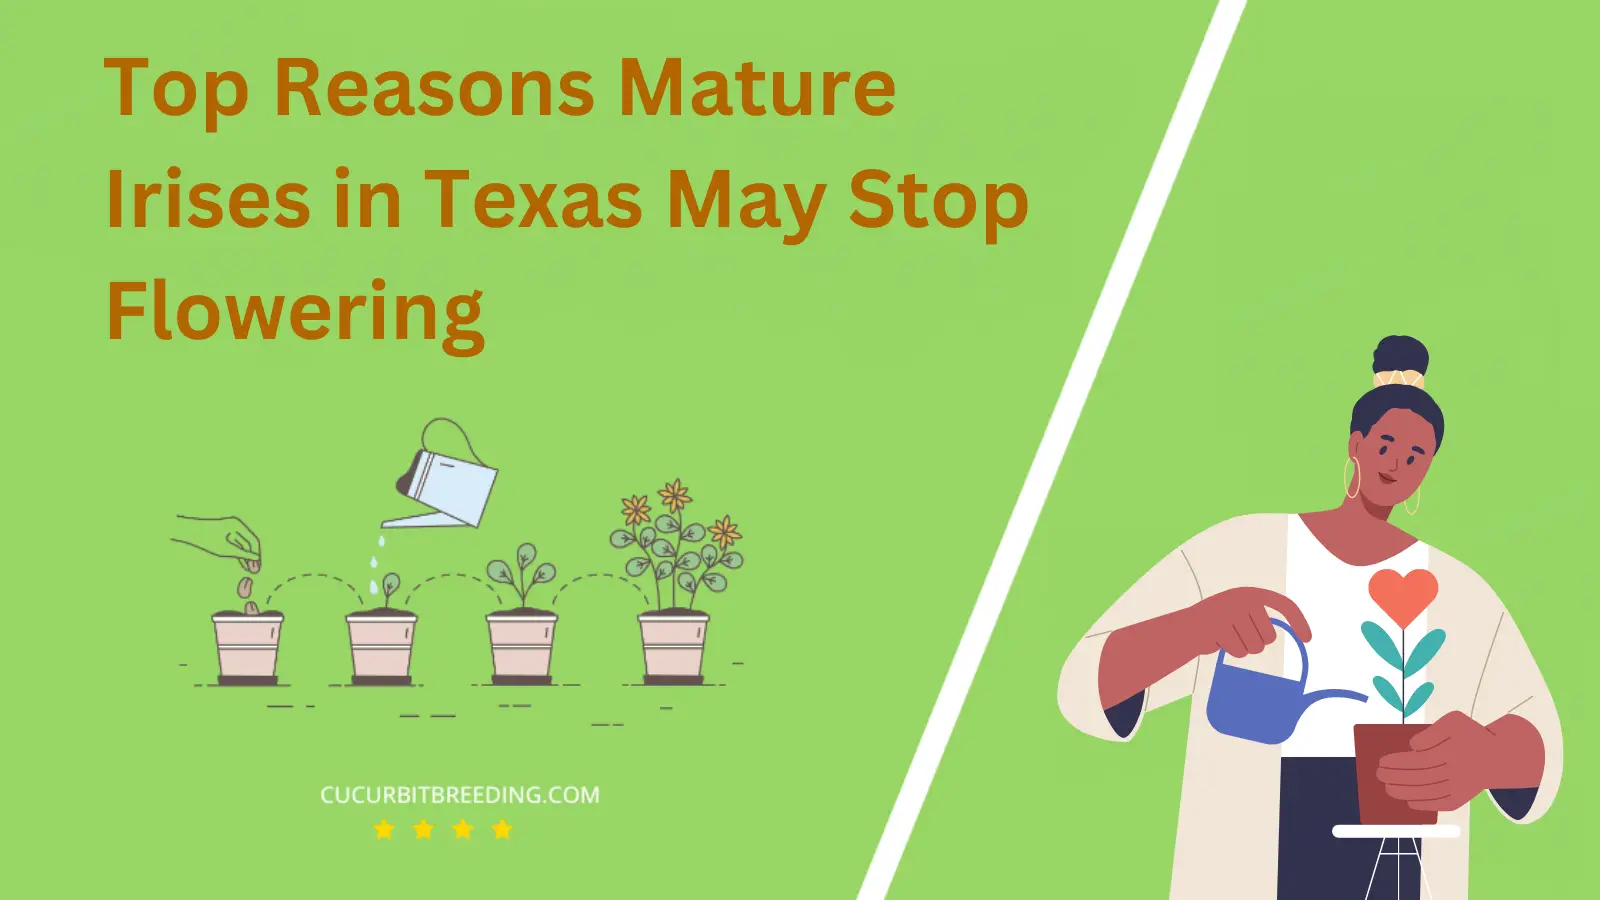 Top Reasons Mature Irises in Texas May Stop Flowering